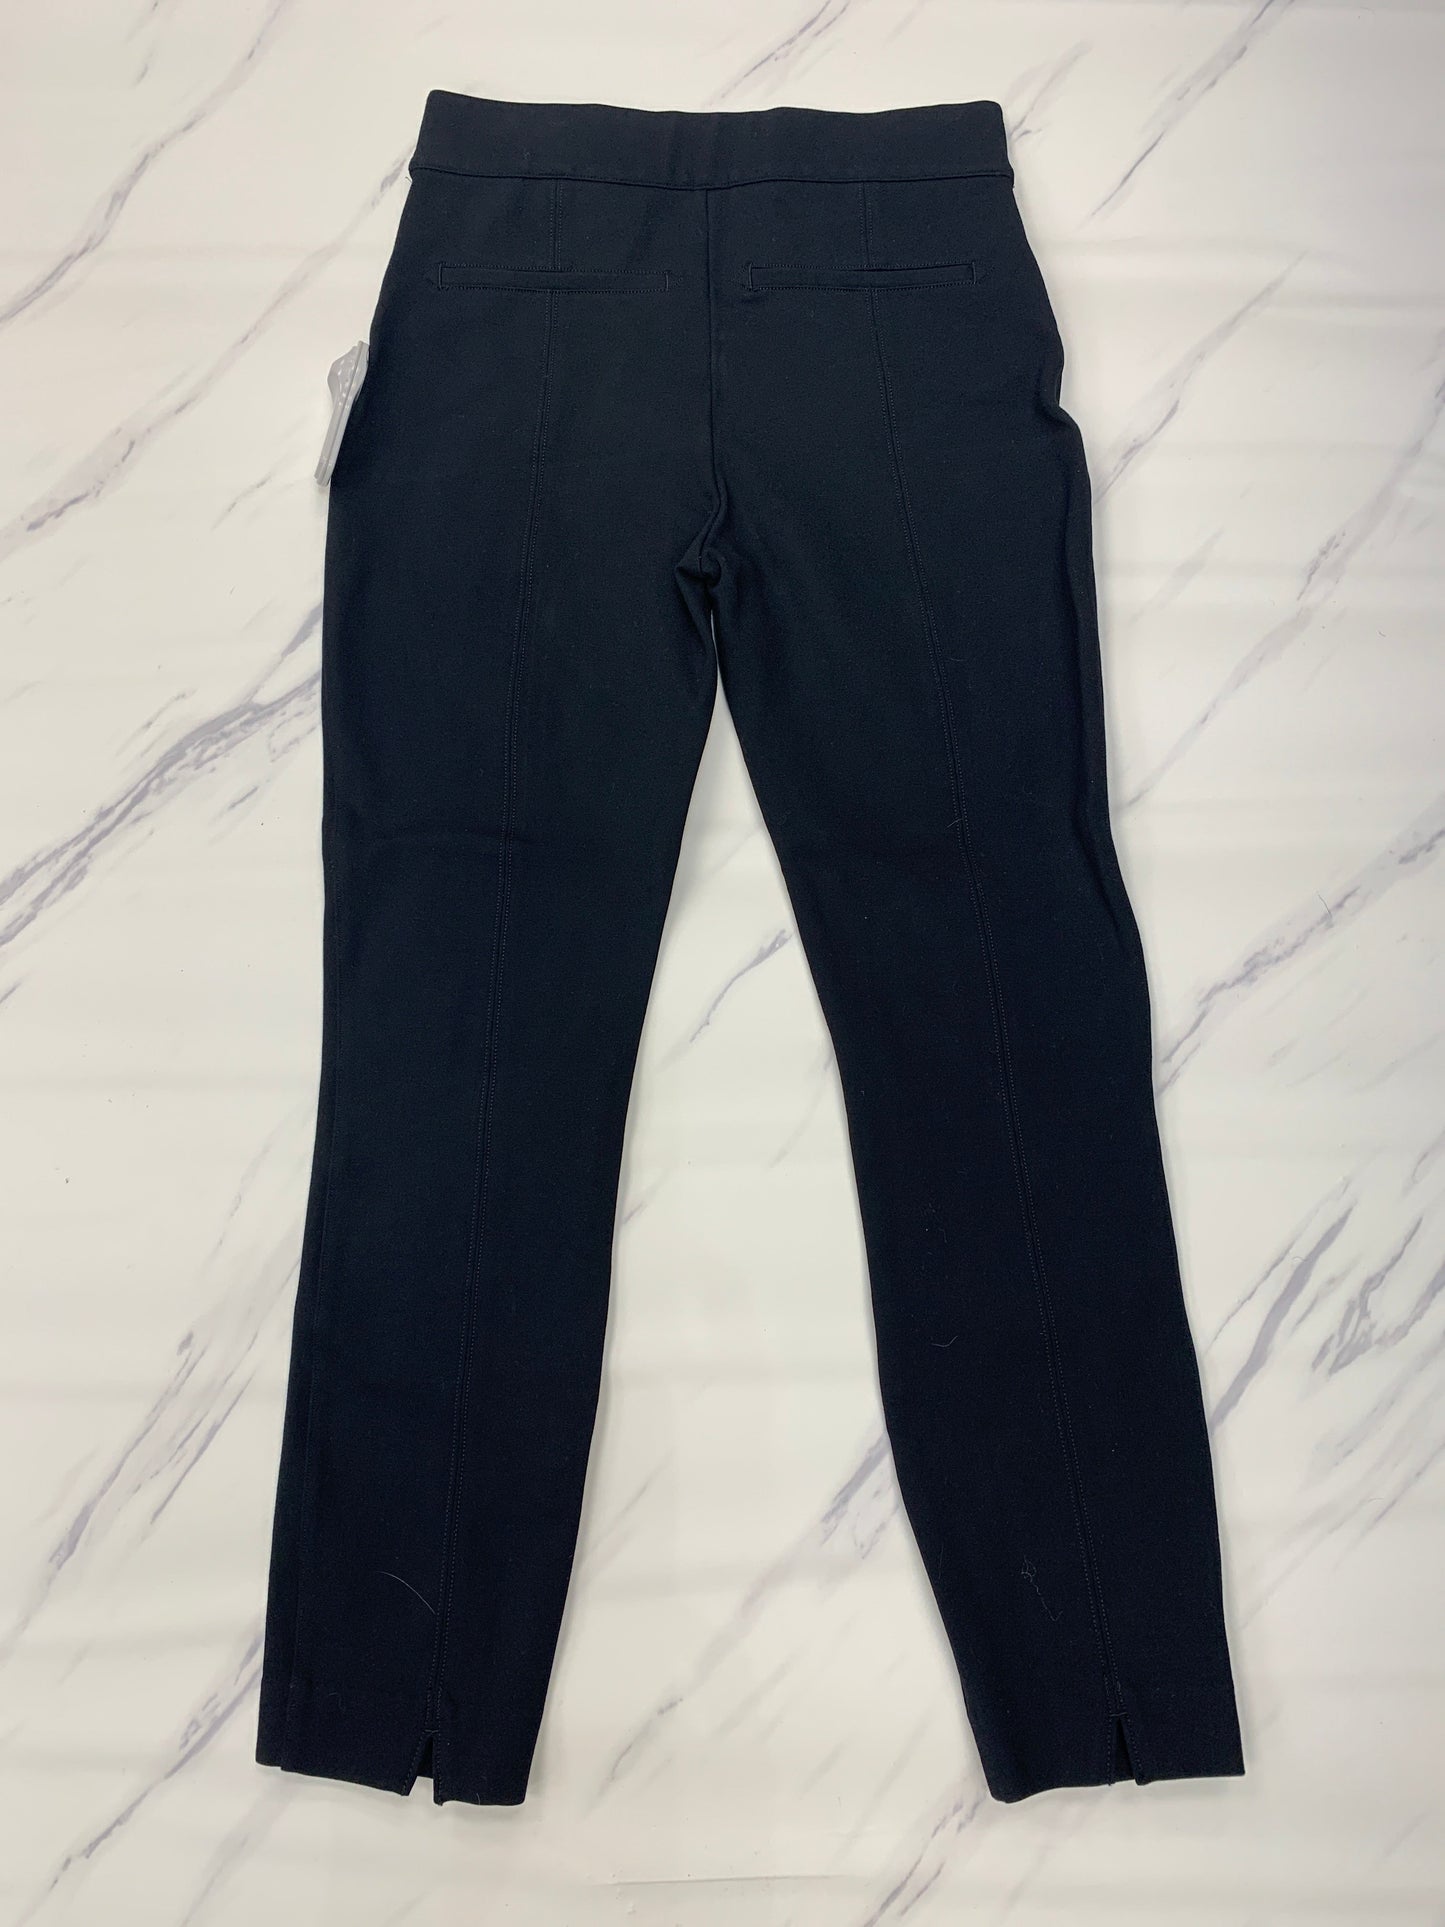 Black Pants Designer Spanx, Size S